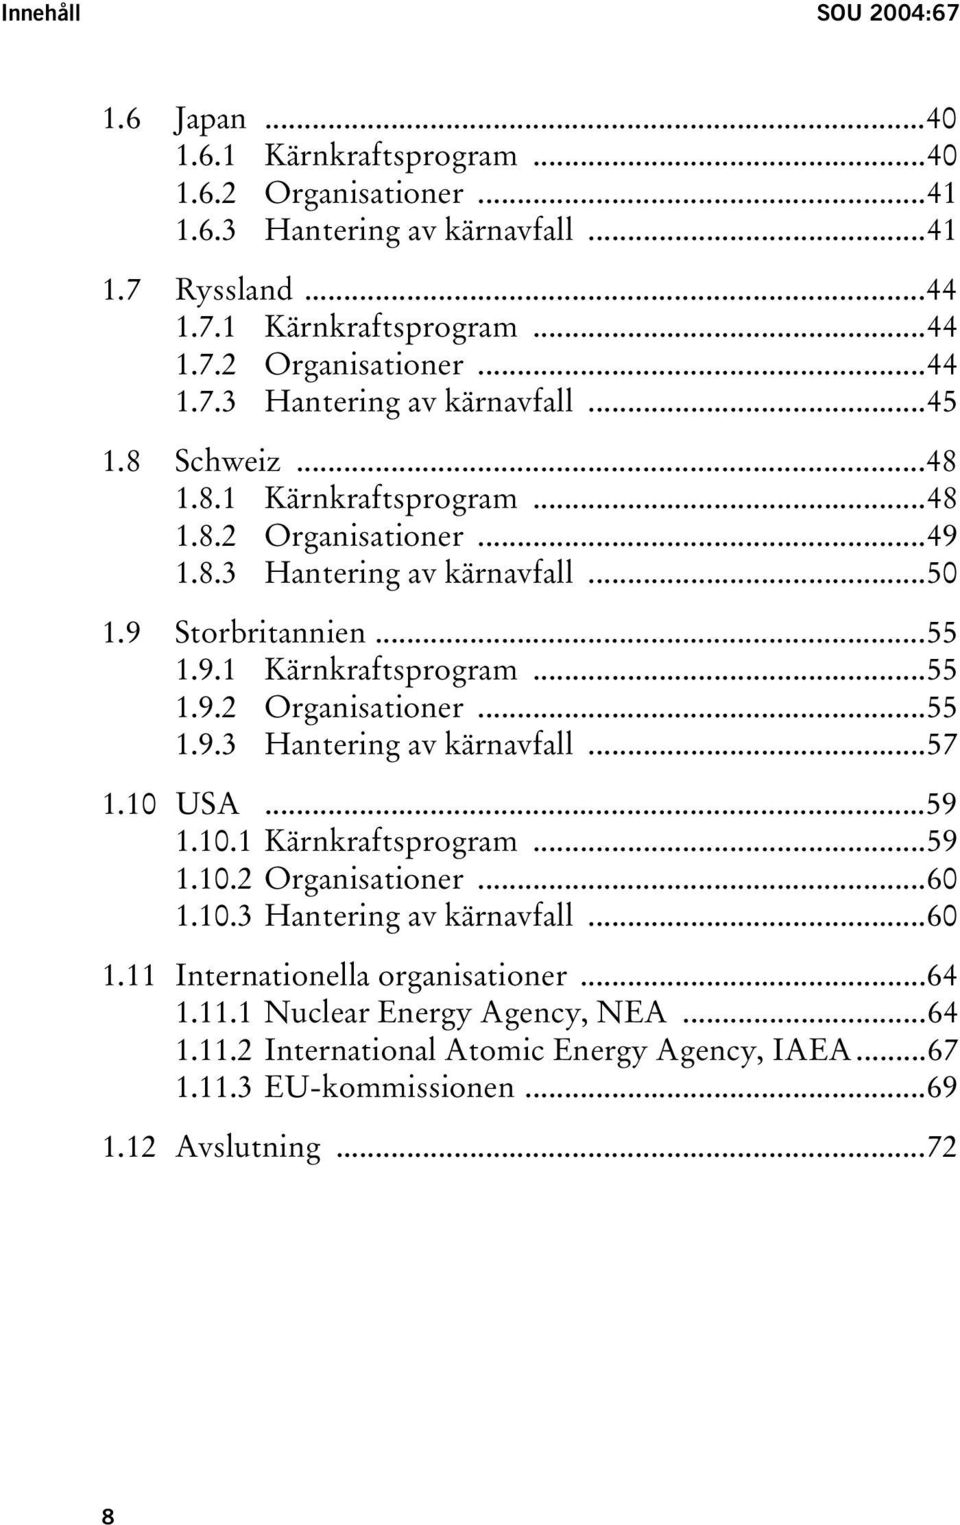 10 USA...59 1.10.1 Kärnkraftsprogram...59 1.10.2 Organisationer...60 1.10.3 Hantering av kärnavfall...60 1.11 Internationella organisationer...64 1.11.1 Nuclear Energy Agency, NEA...64 1.11.2 International Atomic Energy Agency, IAEA.